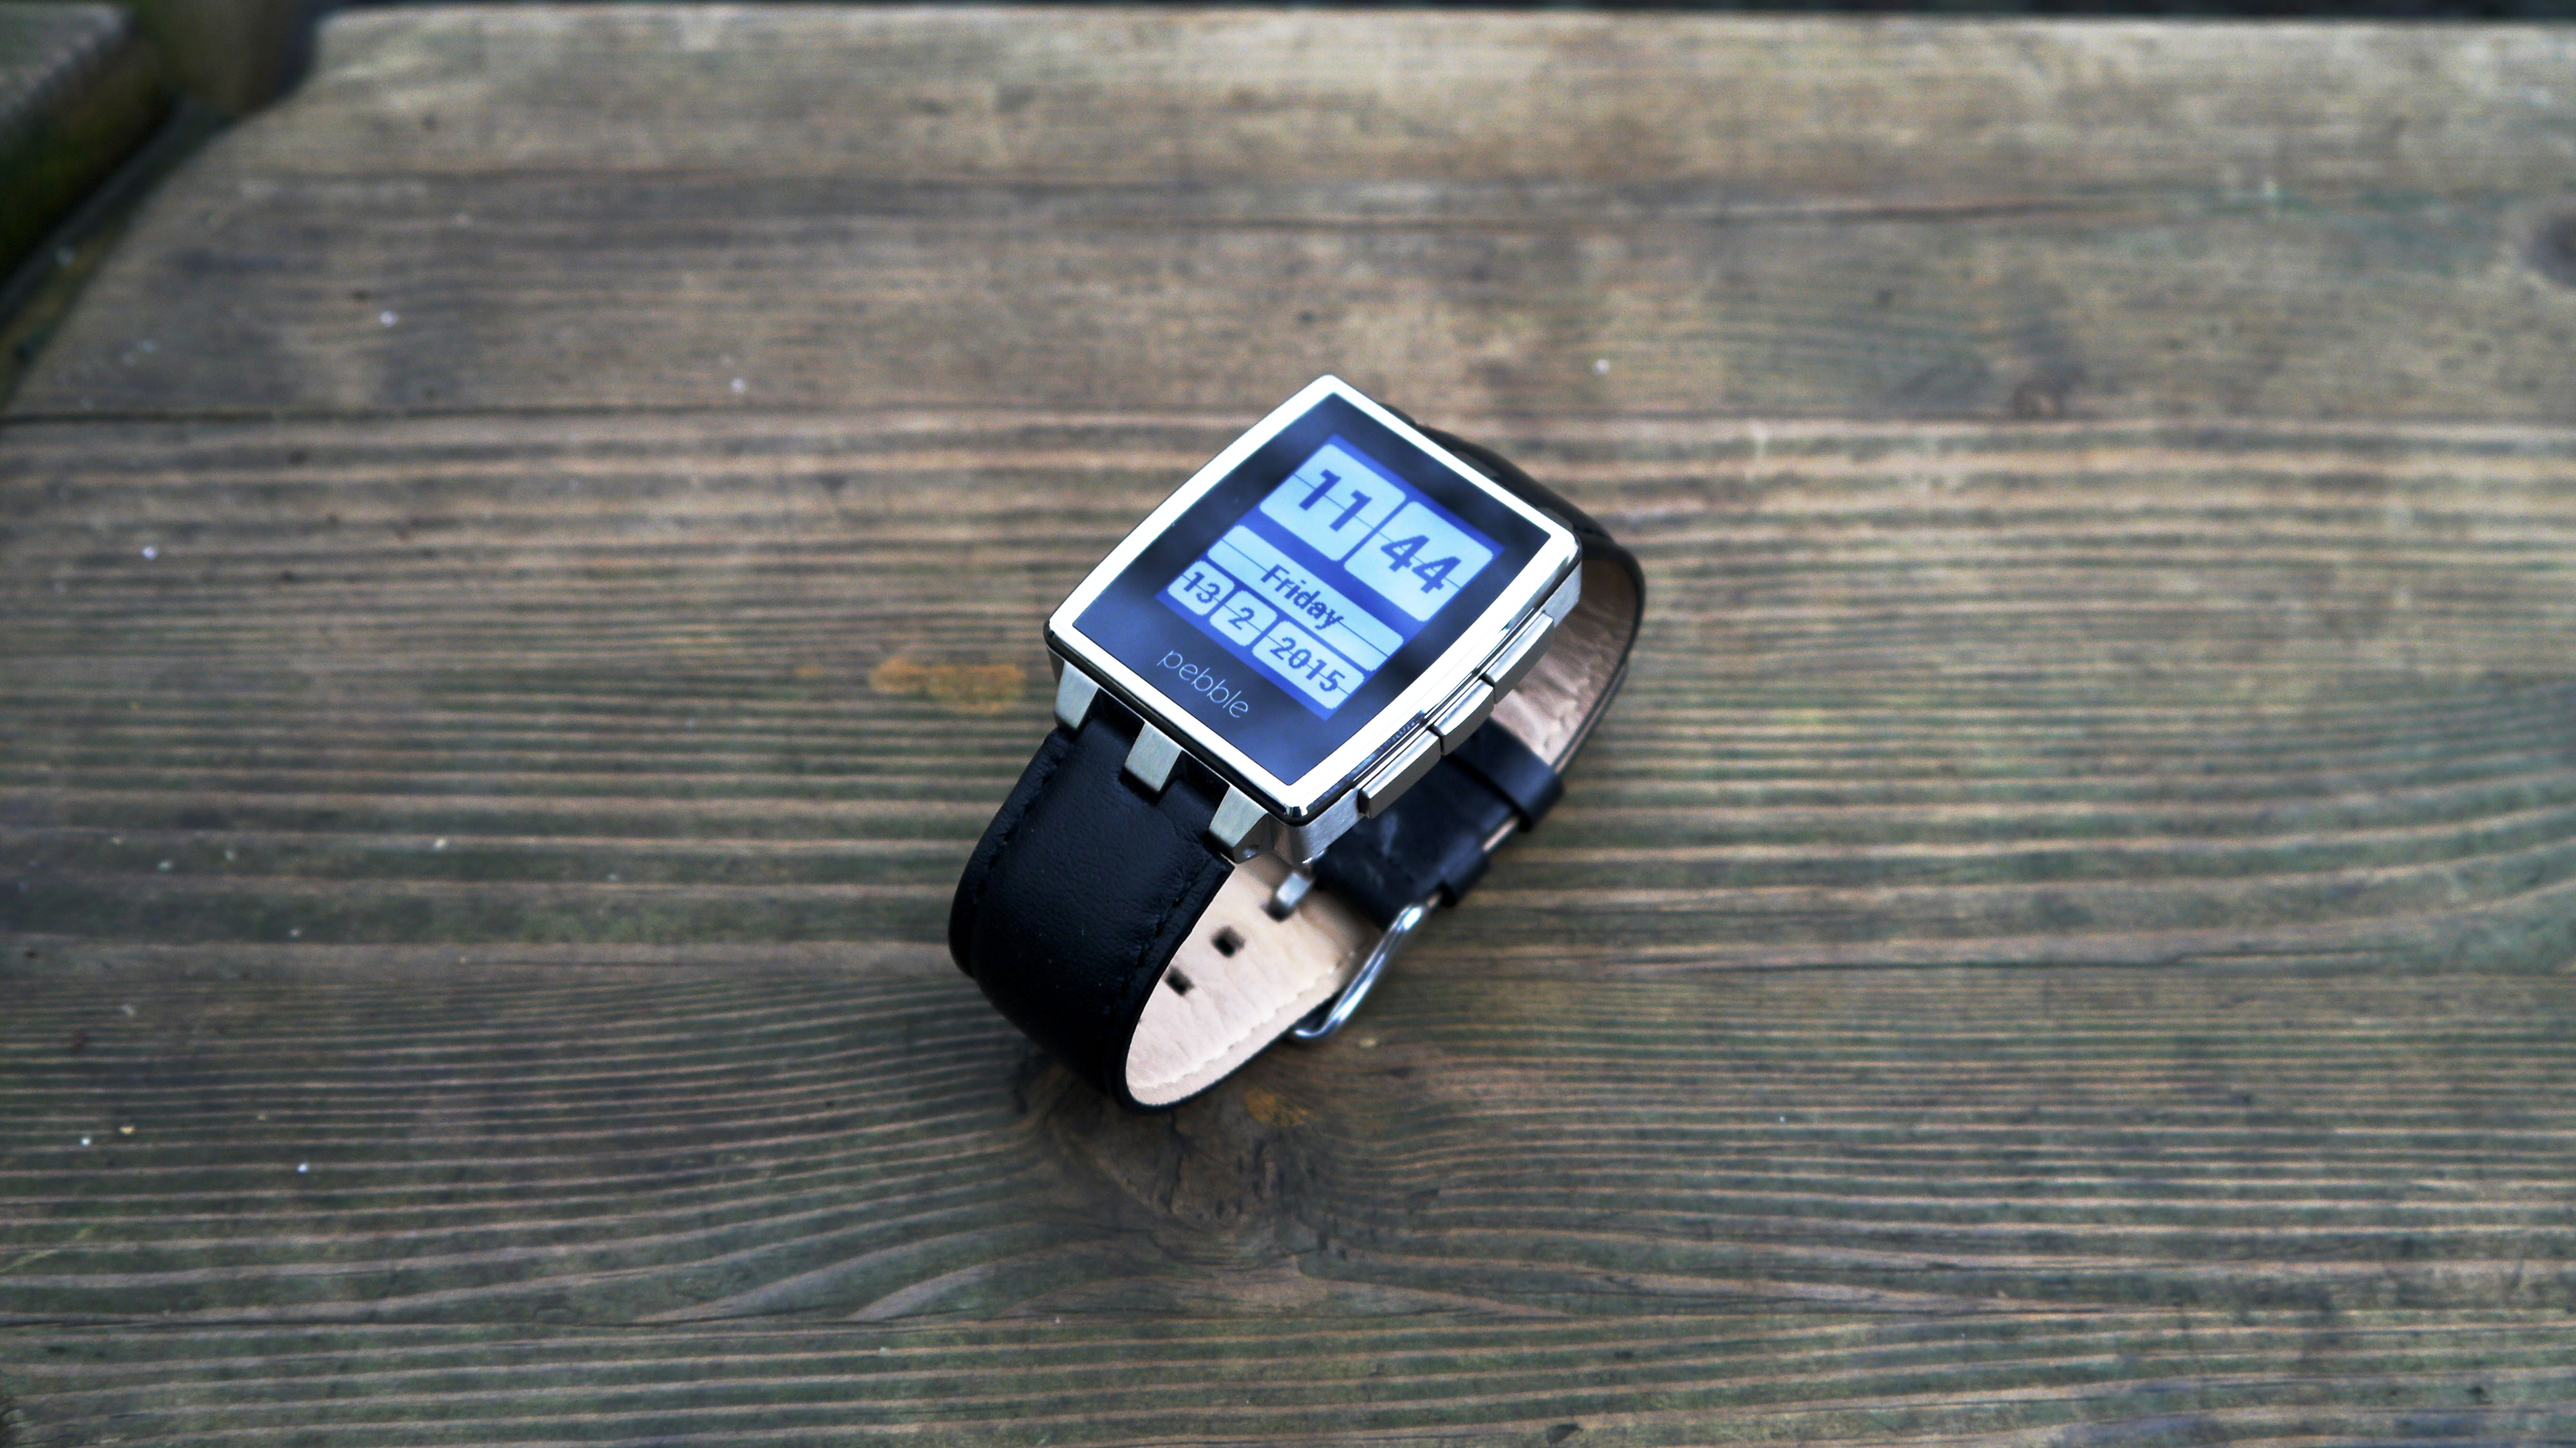 pebble watch model 4015